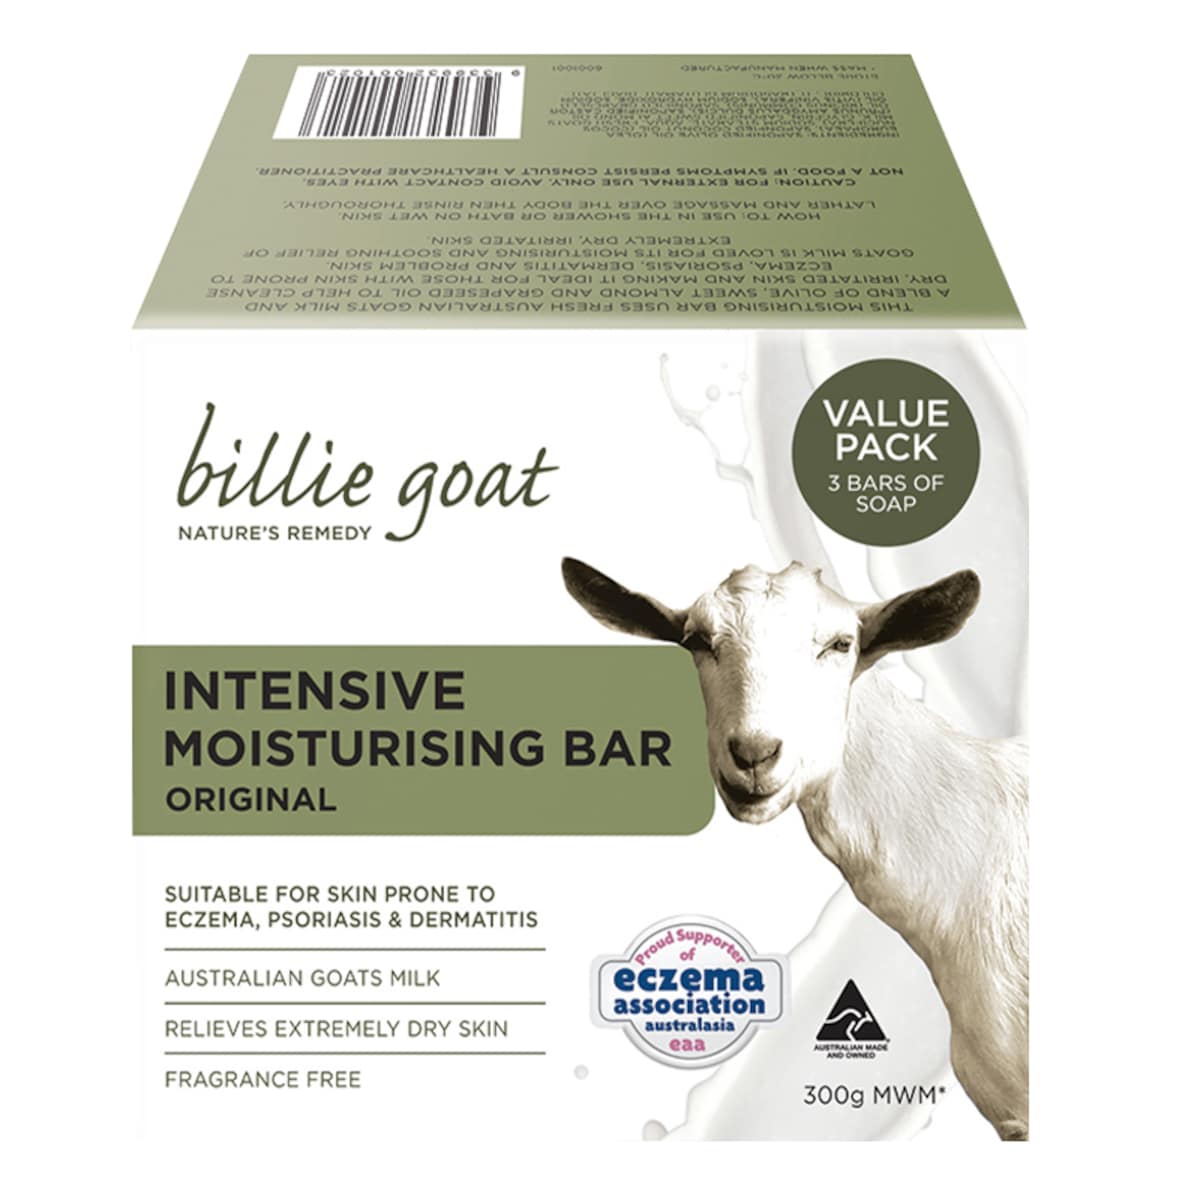 Billie Goat Intensive Moisturising Bar Original Value Pack 3 x 100g